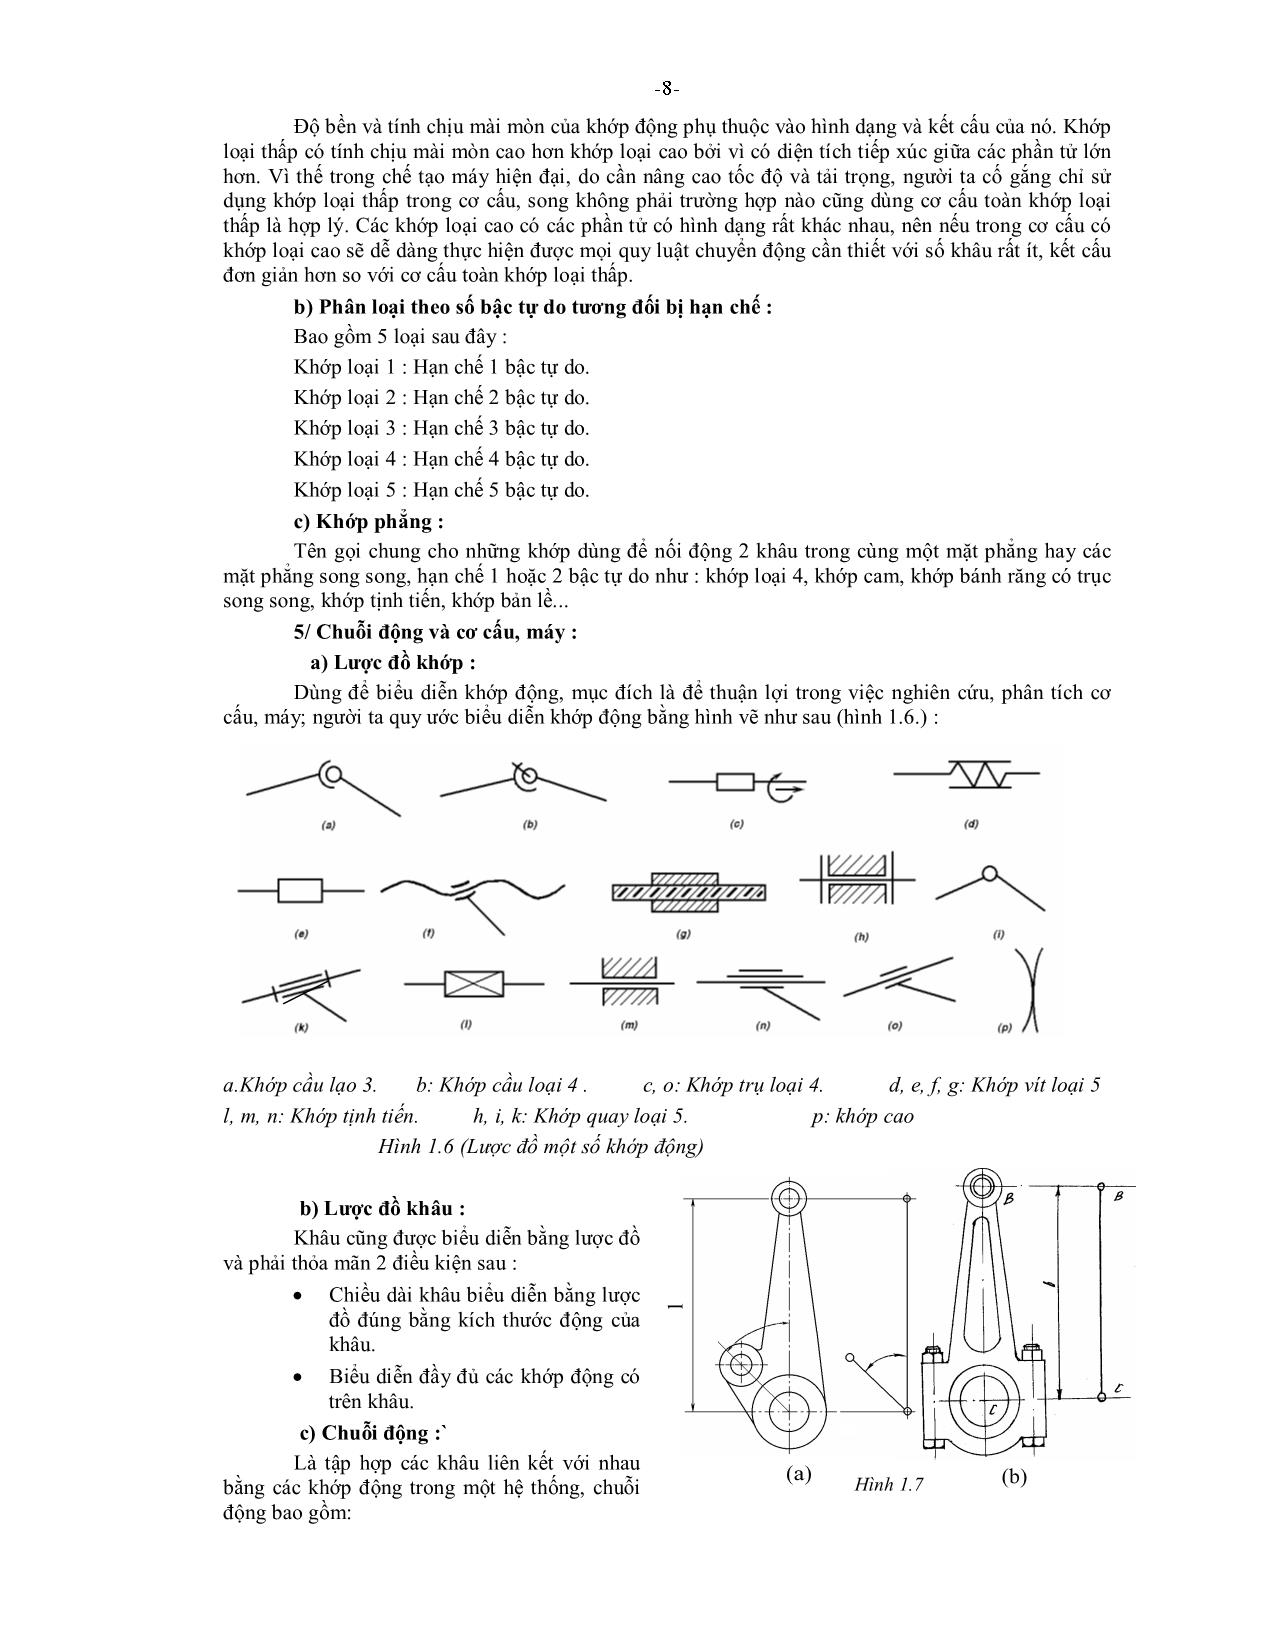 Giáo trình Nguyên lý máy - Trần Ngọc Nhuần trang 8